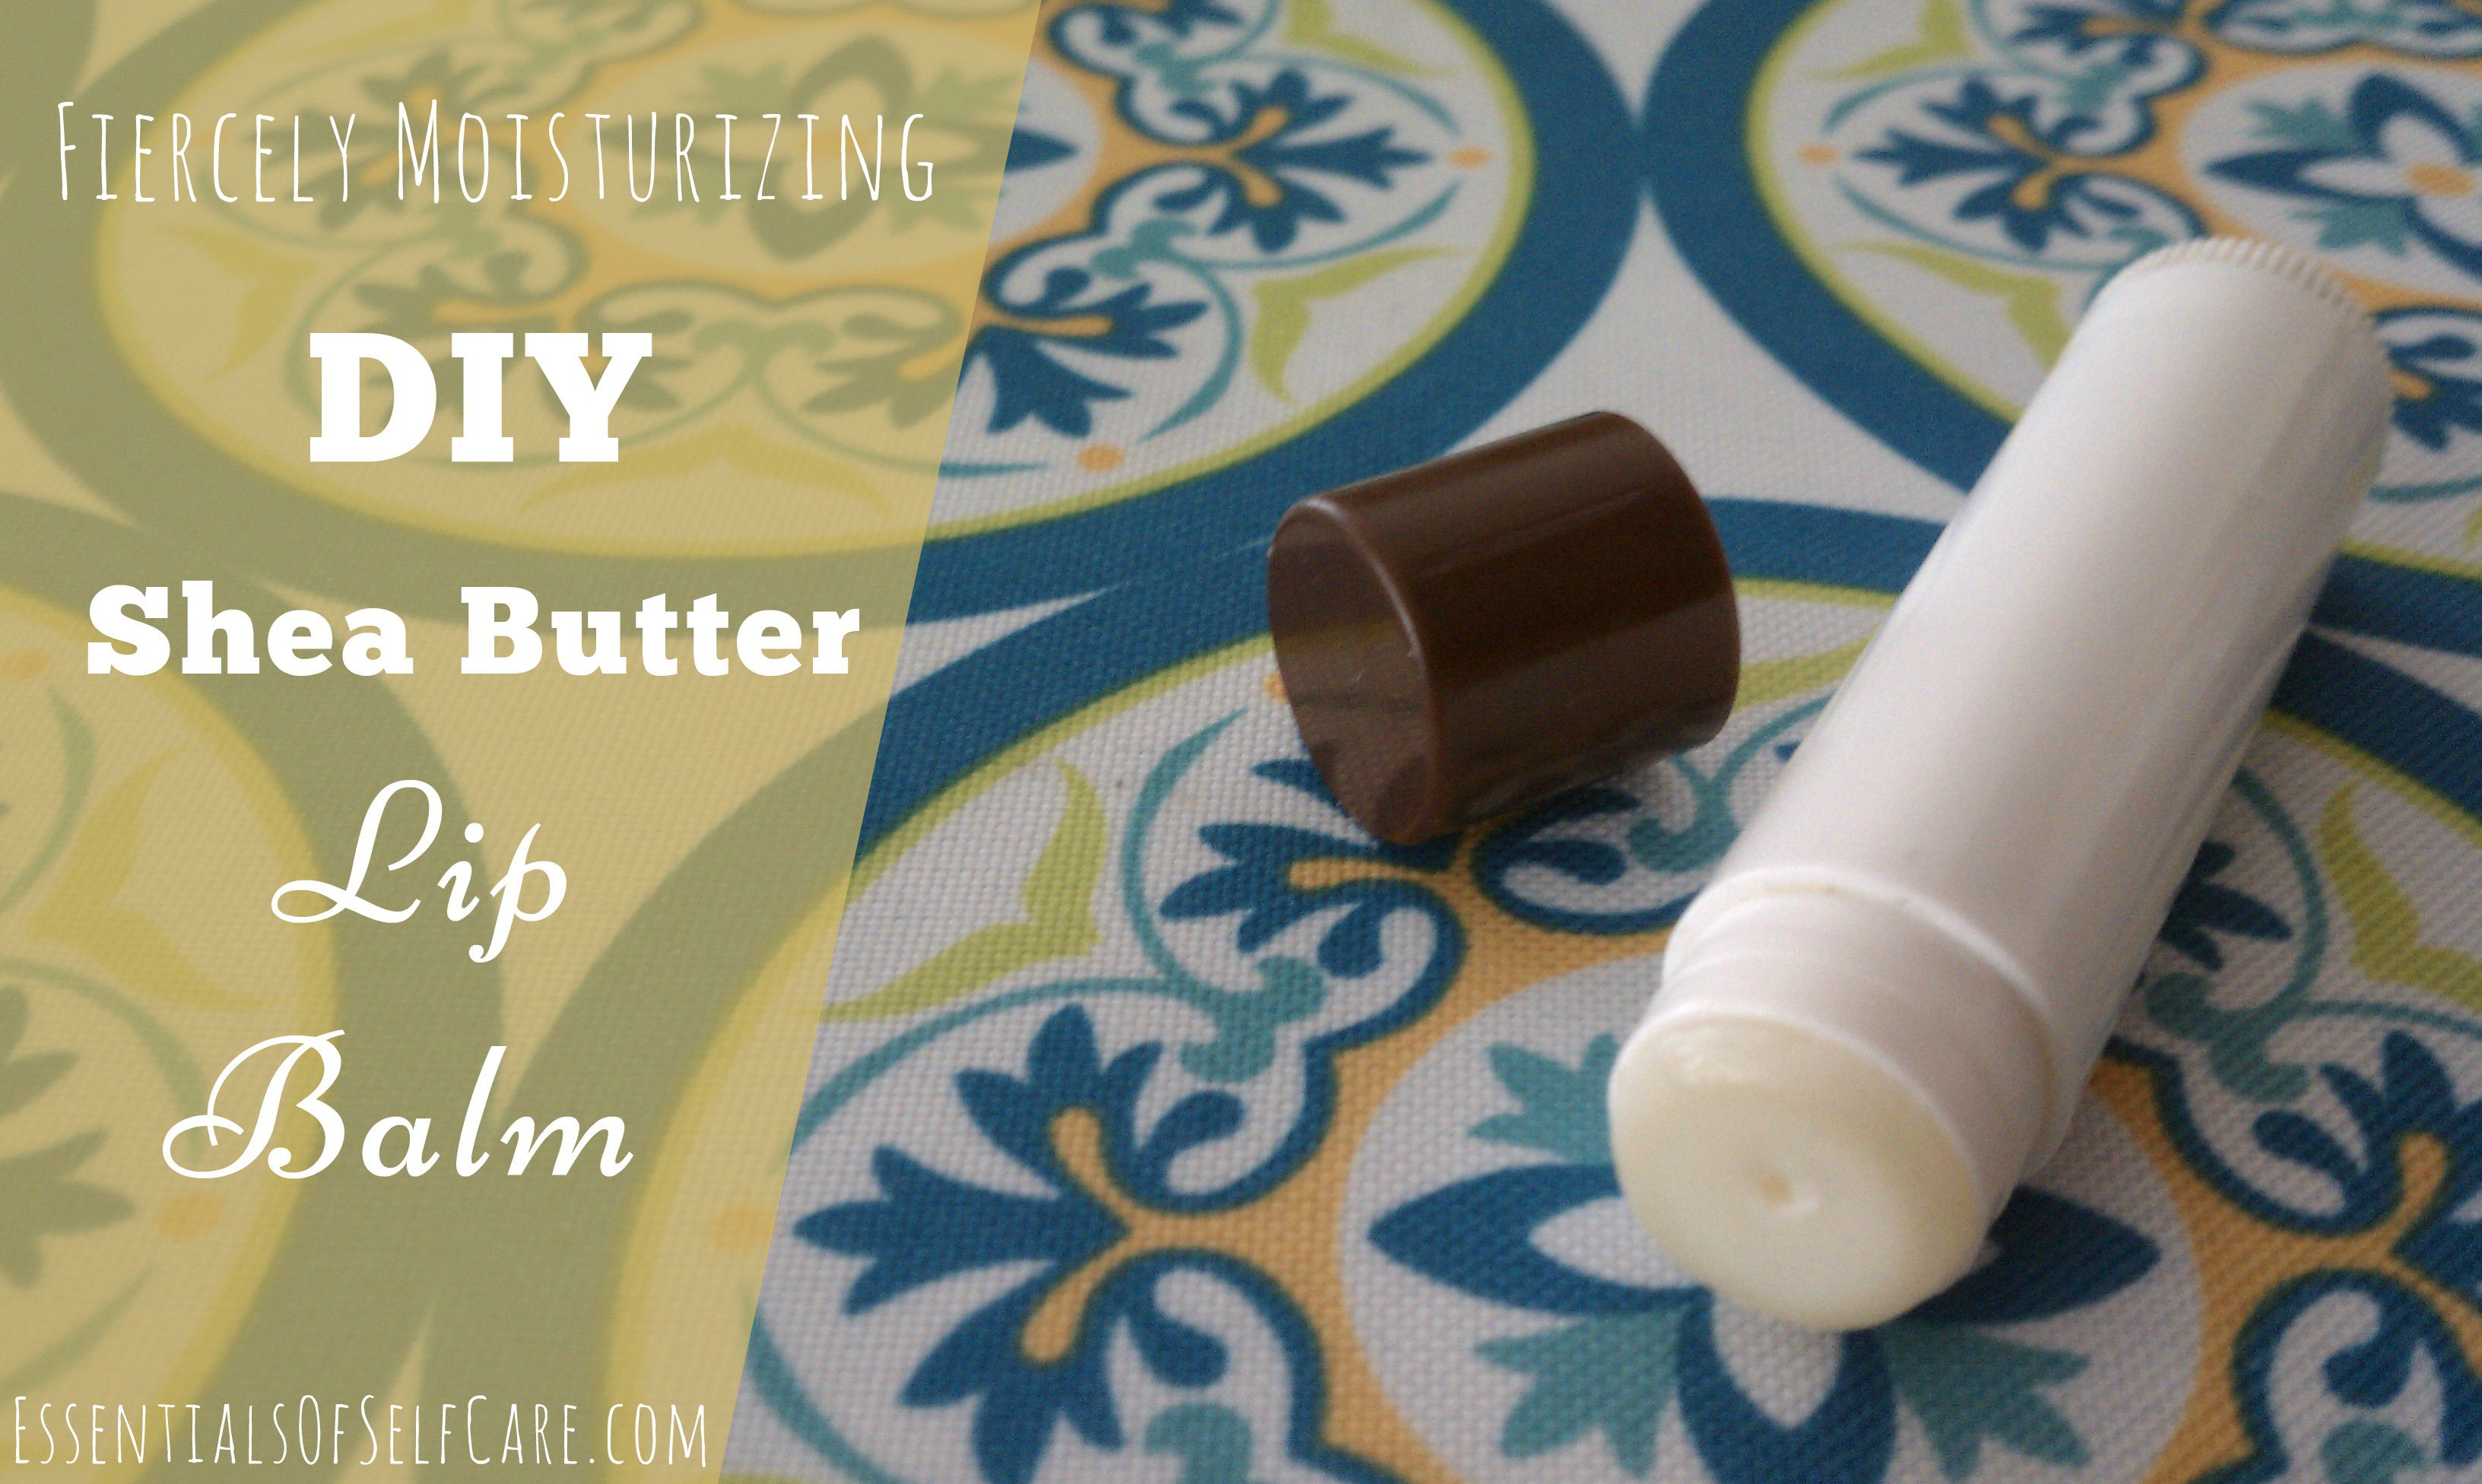 Fiercely Moisturizing DIY Shea Butter Lip Balm